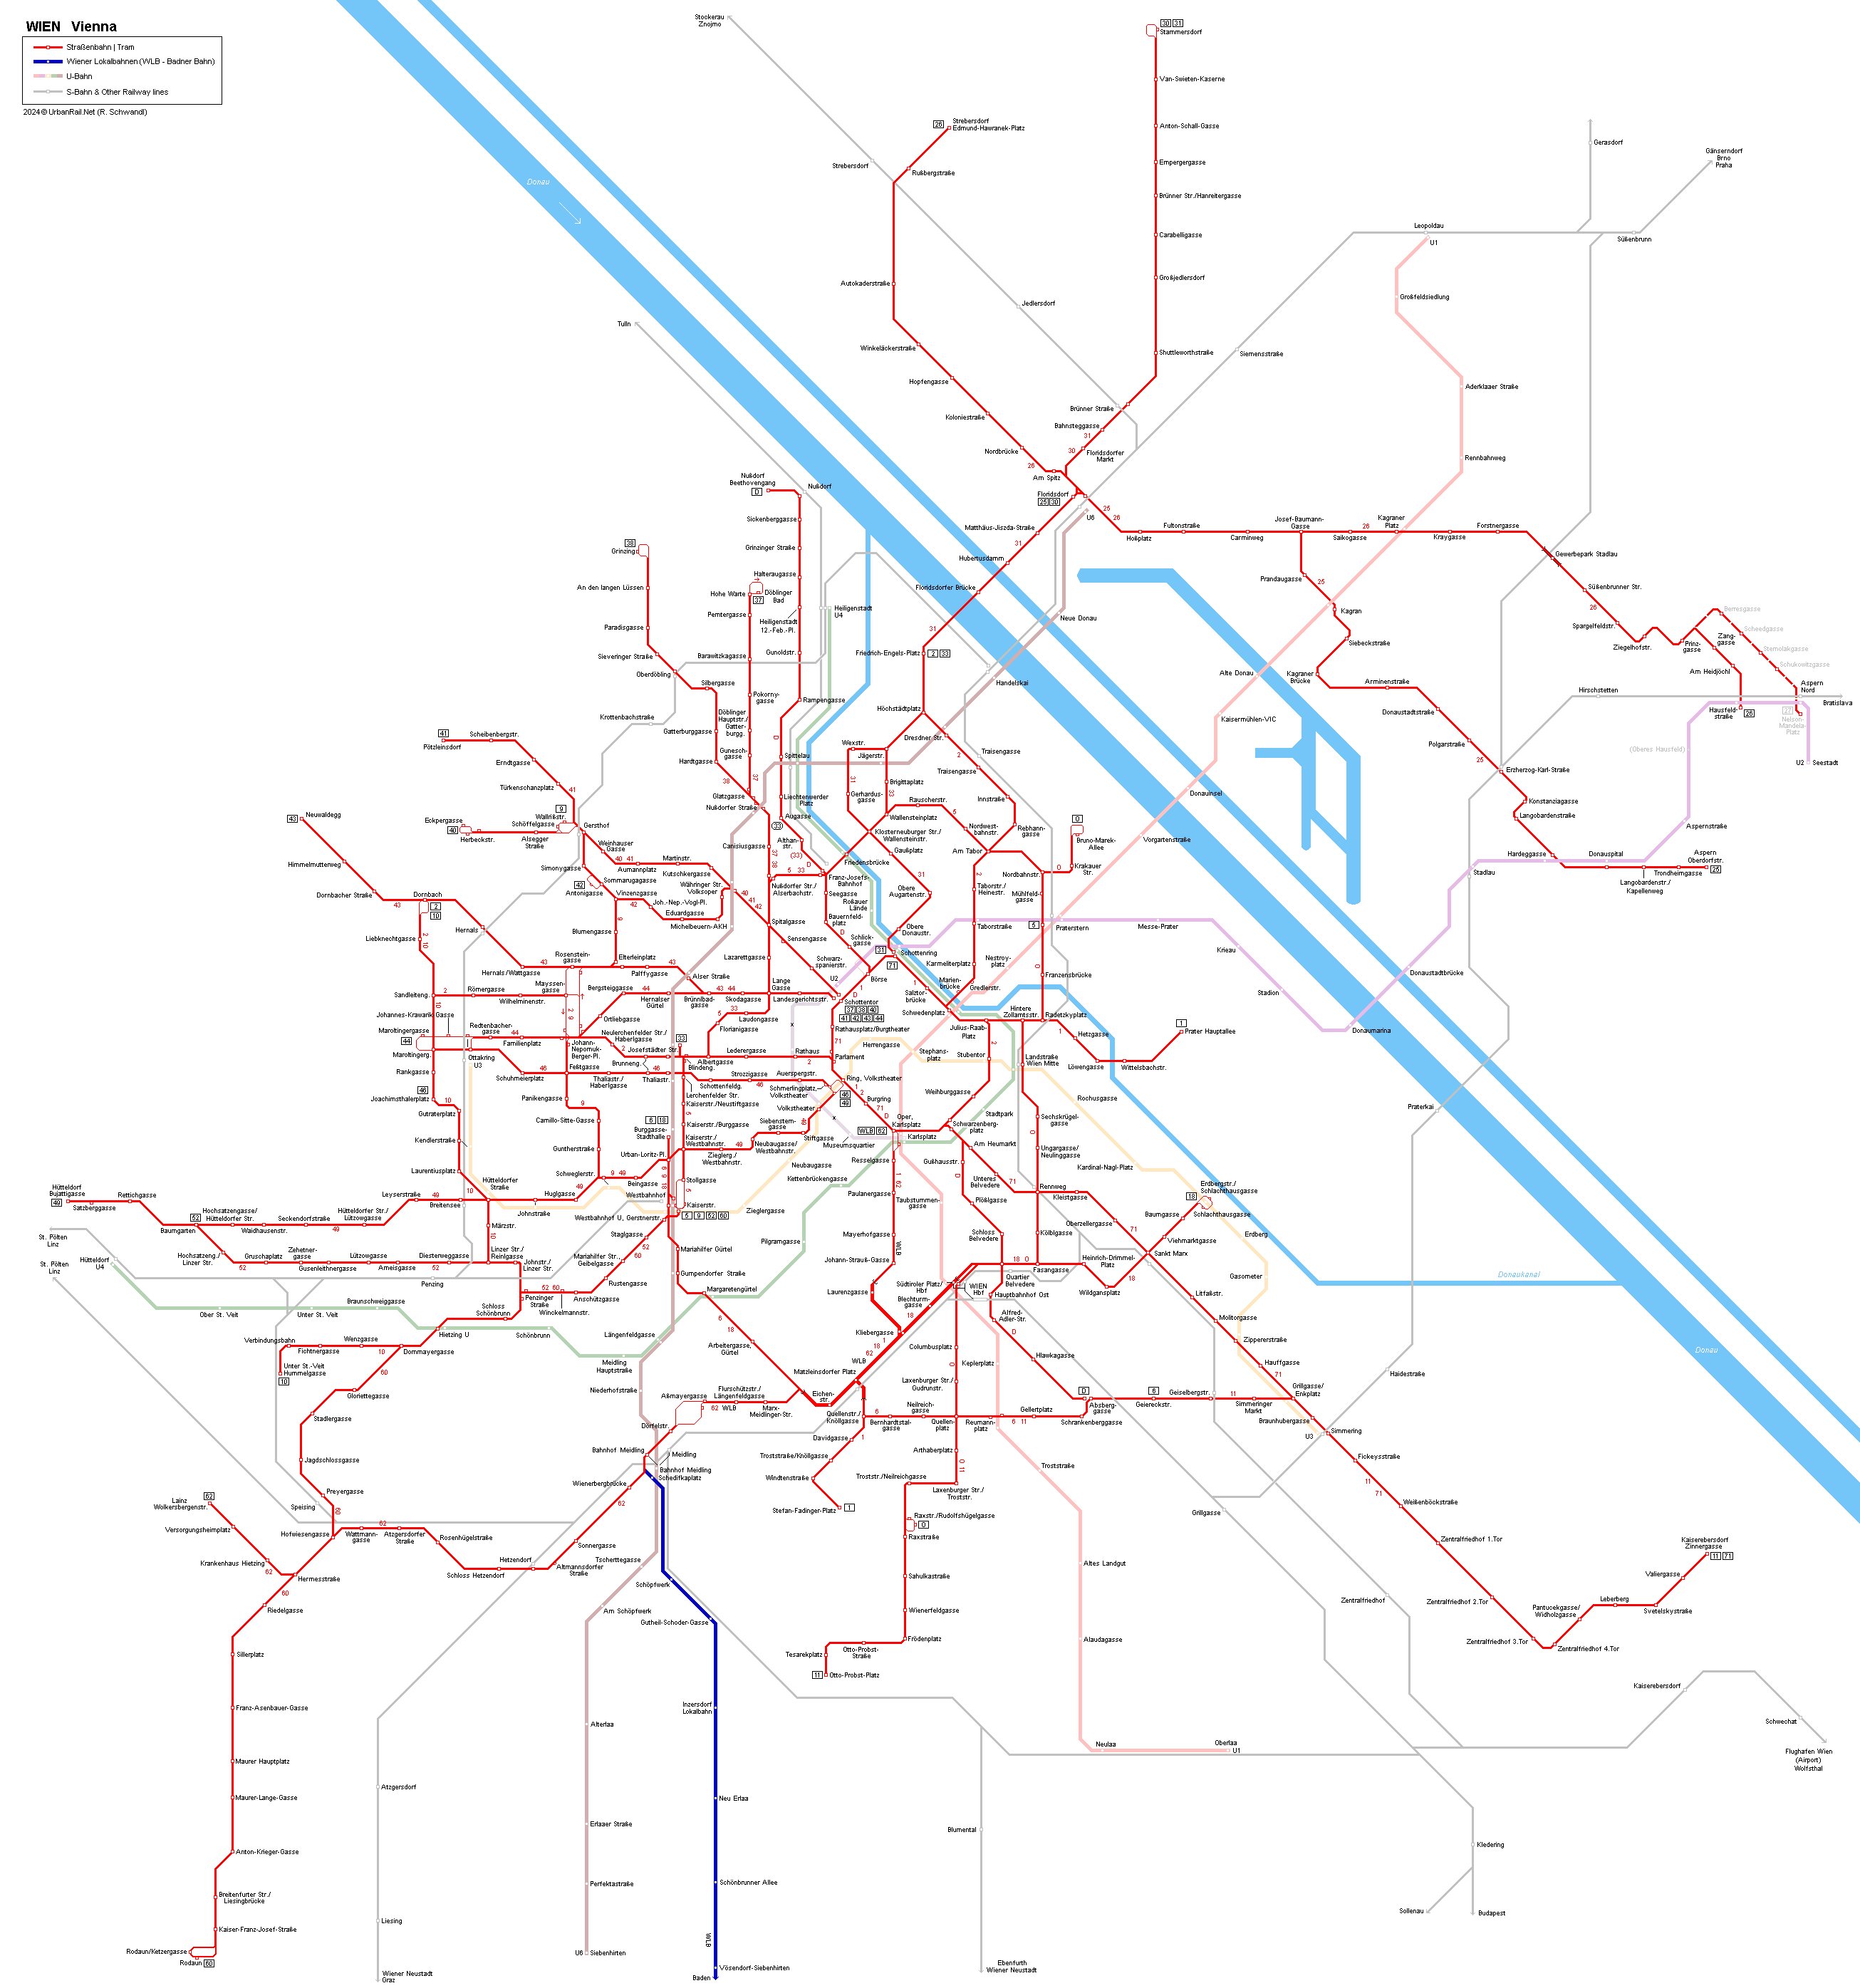 Vienna Tram Map - Wiener Straßenbahn Netzplan © UrbanRail.Net